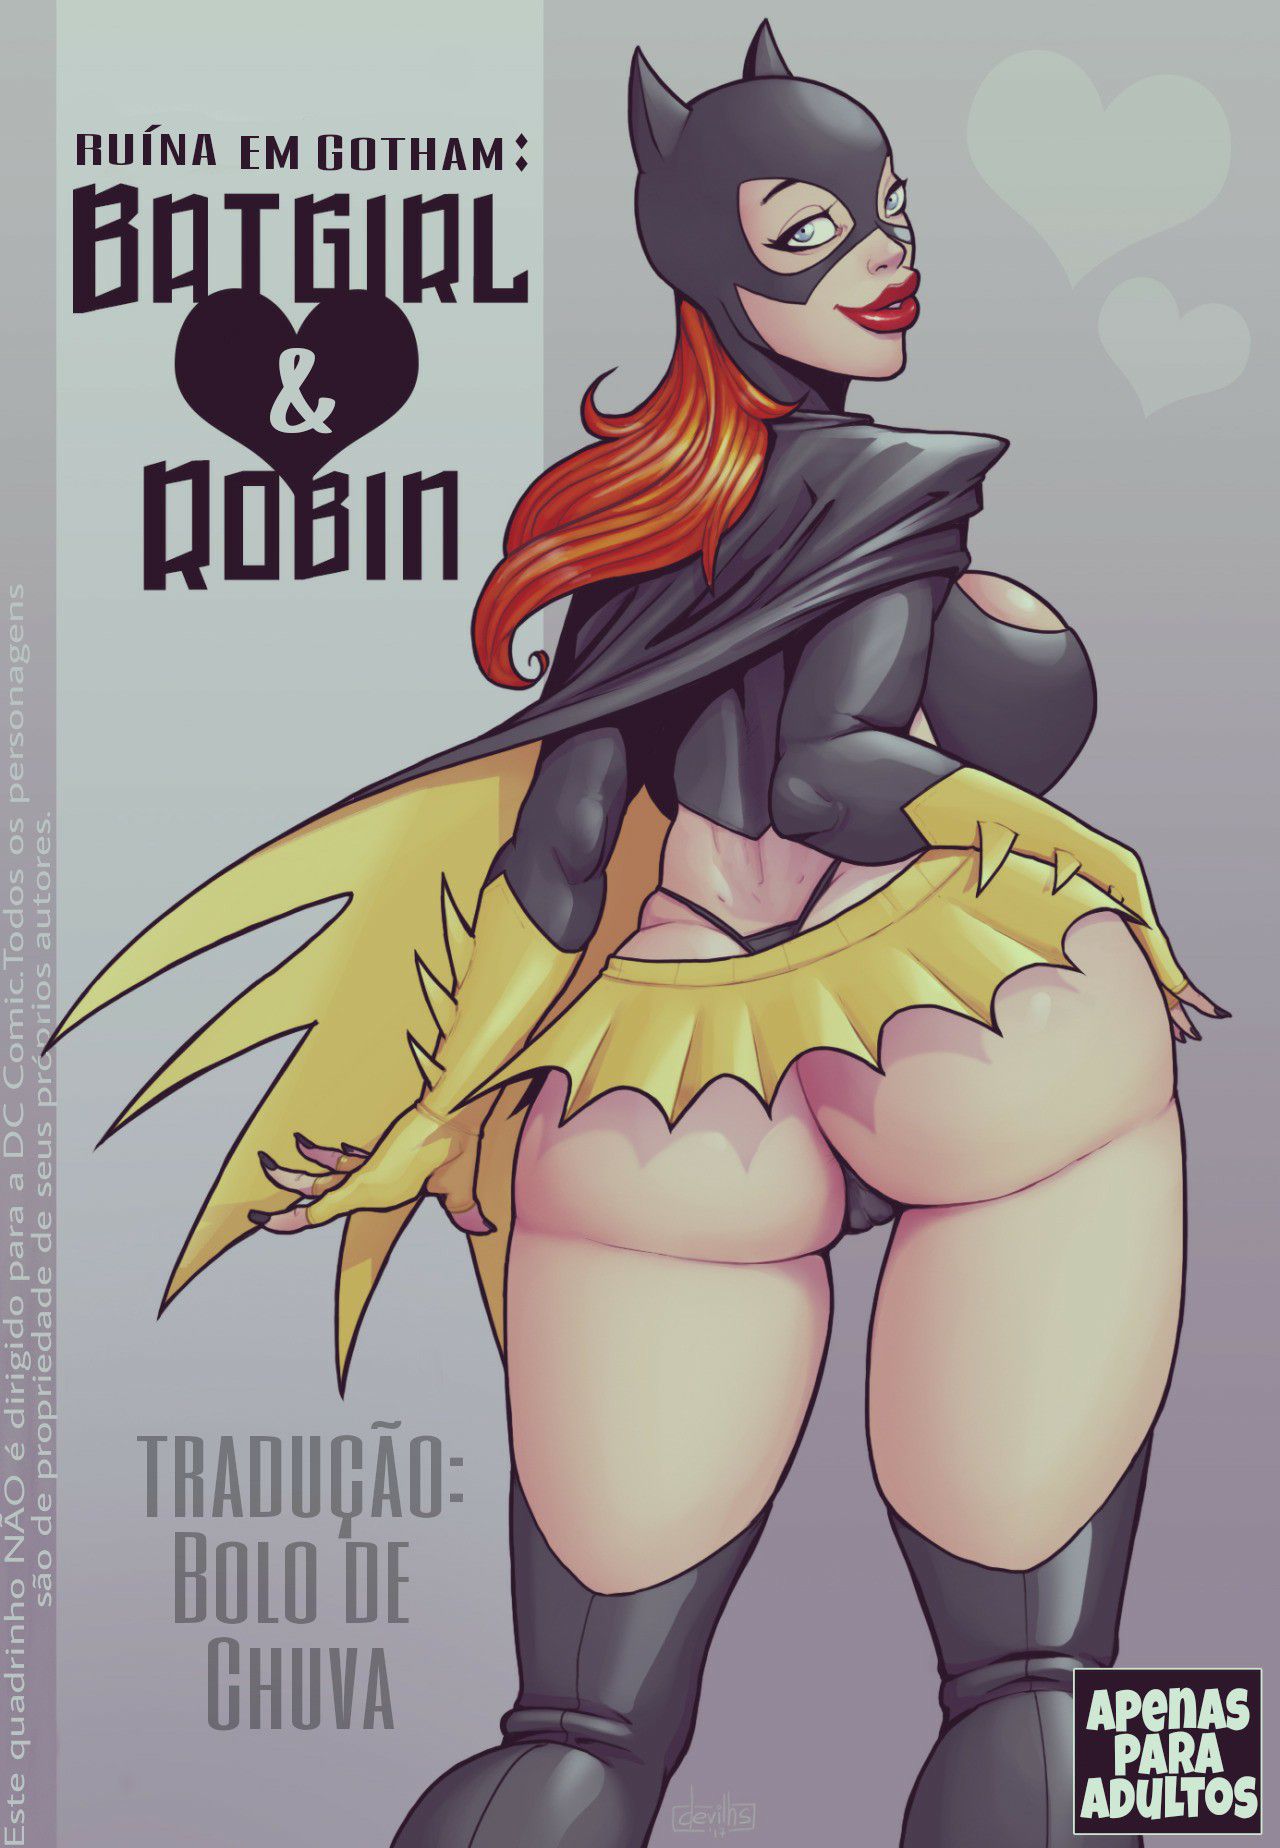 [DevilHS] Ruína em Gotham - Batgirl & Robin (Portuguese) [DevilHS] Ruined Gotham - Batgirl loves Robin (English) 1